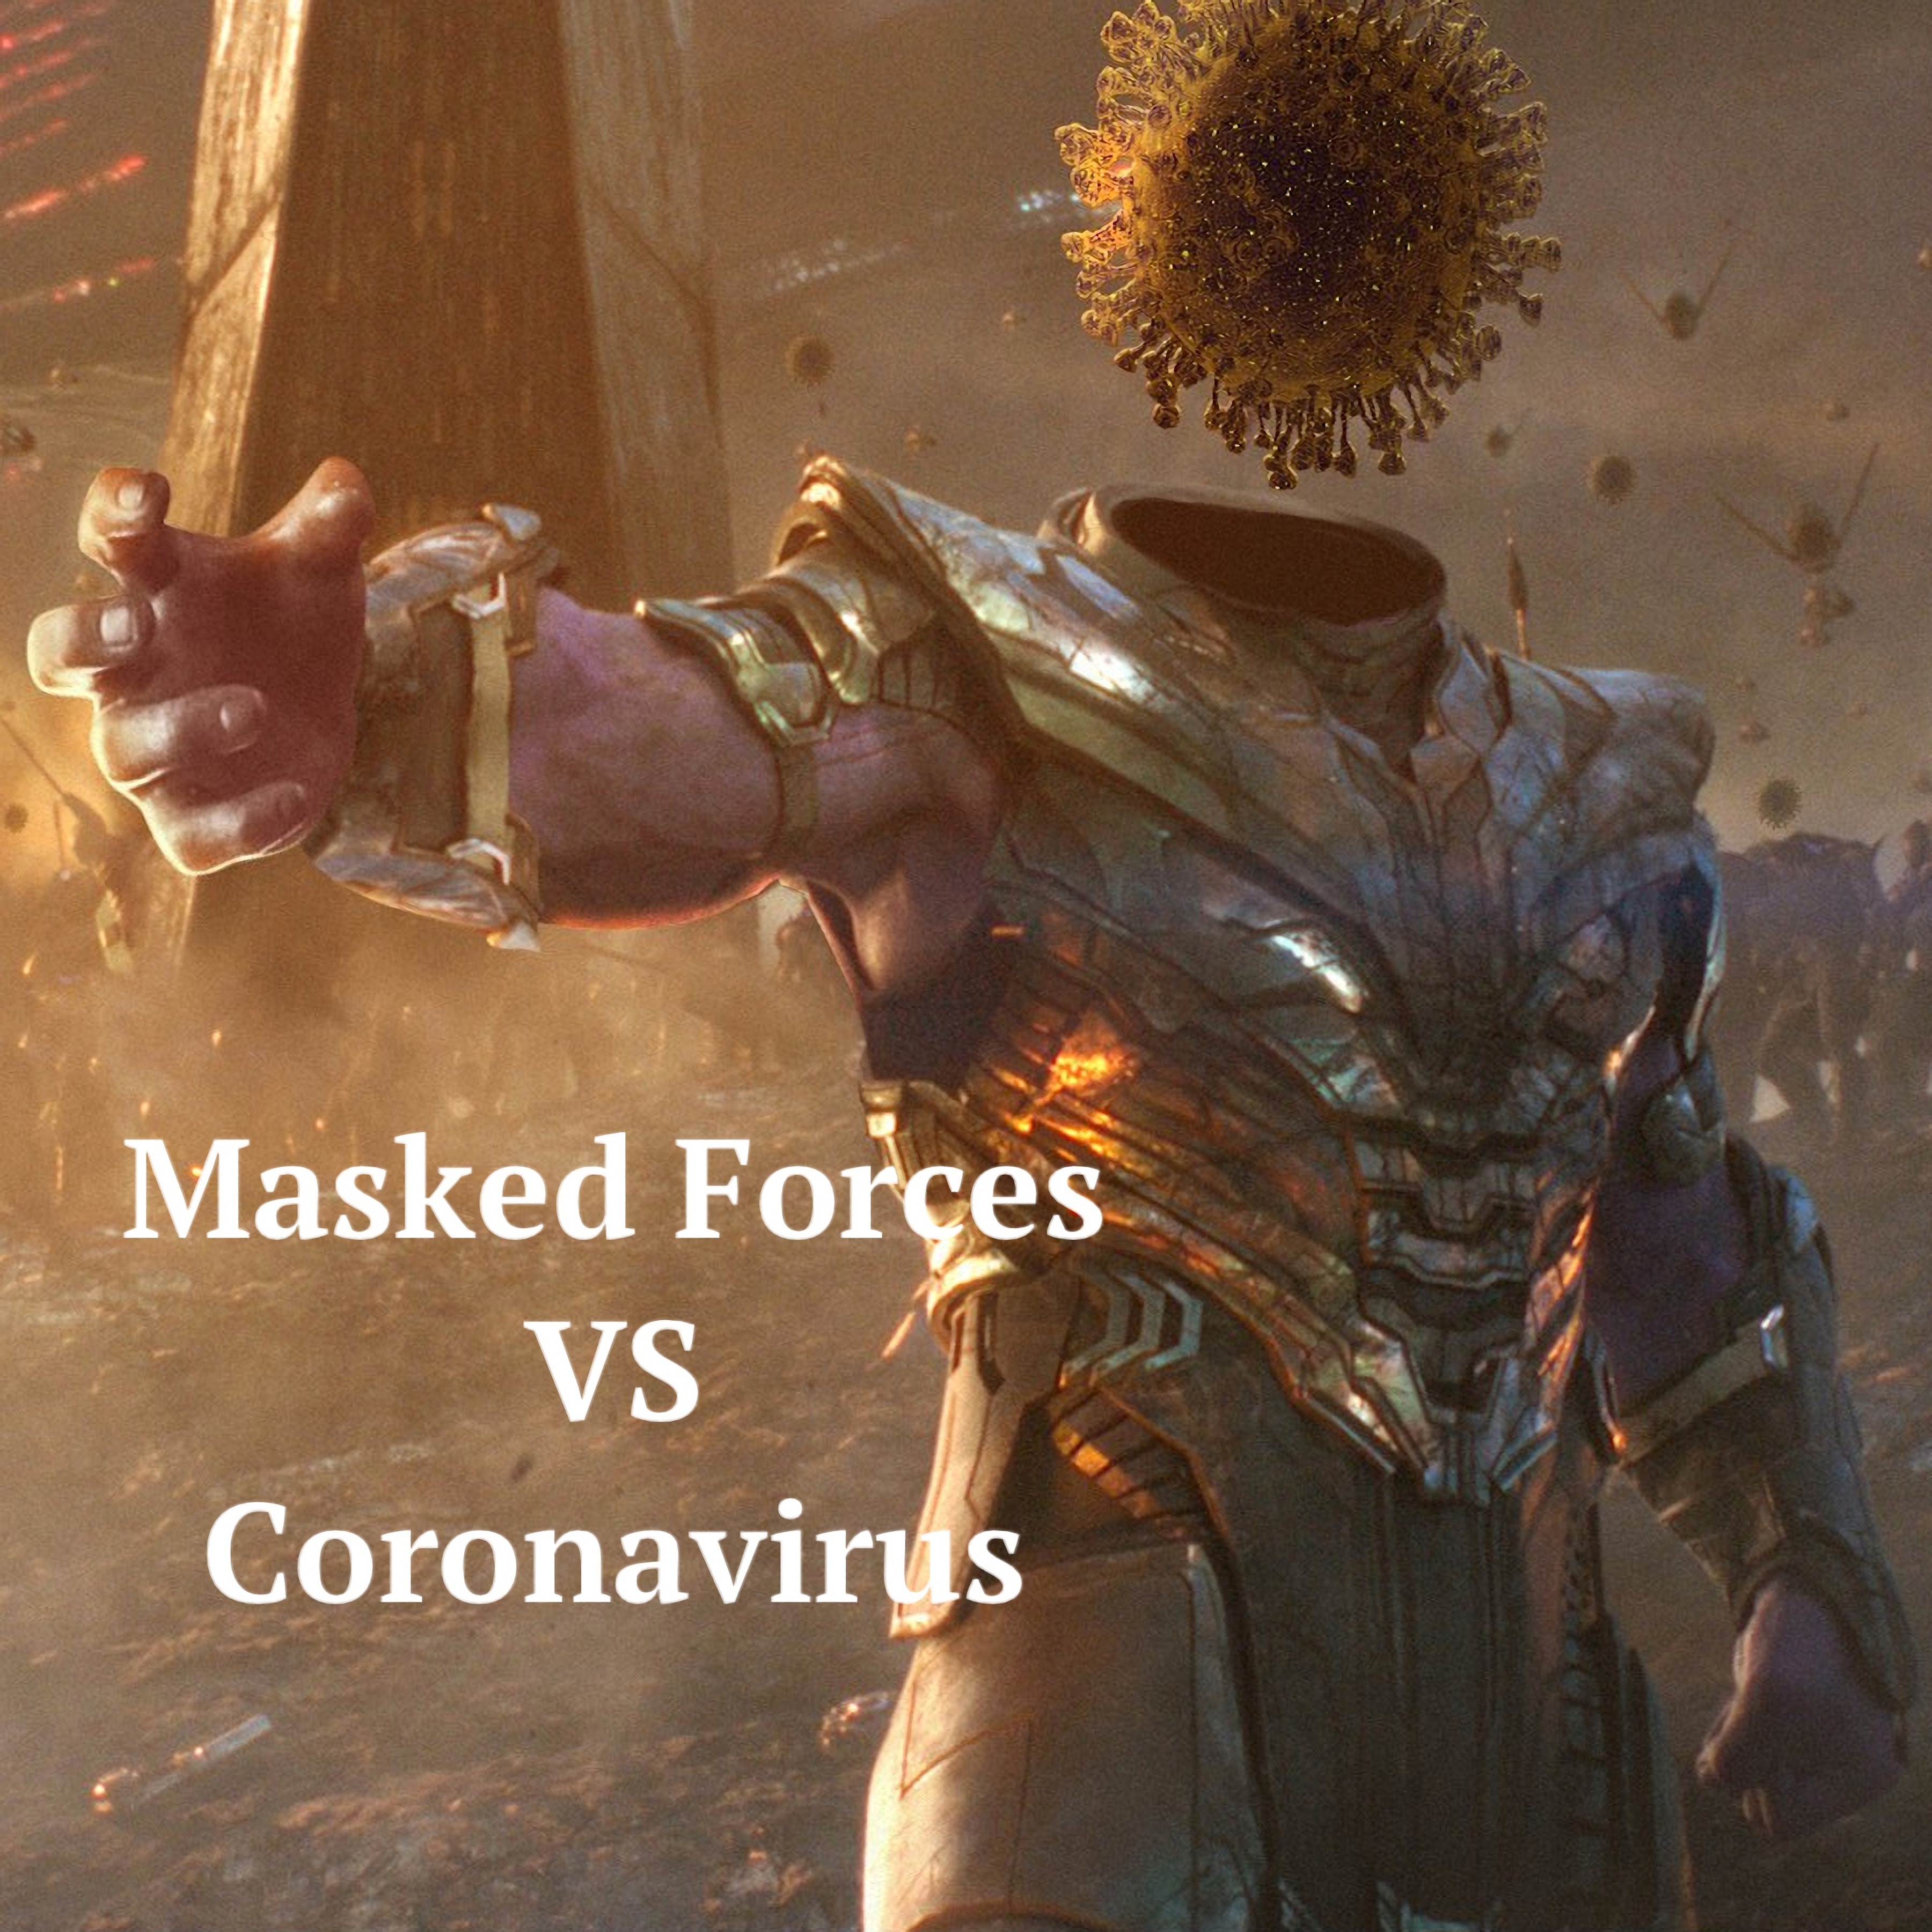 Masked Forces VS Coronavirus